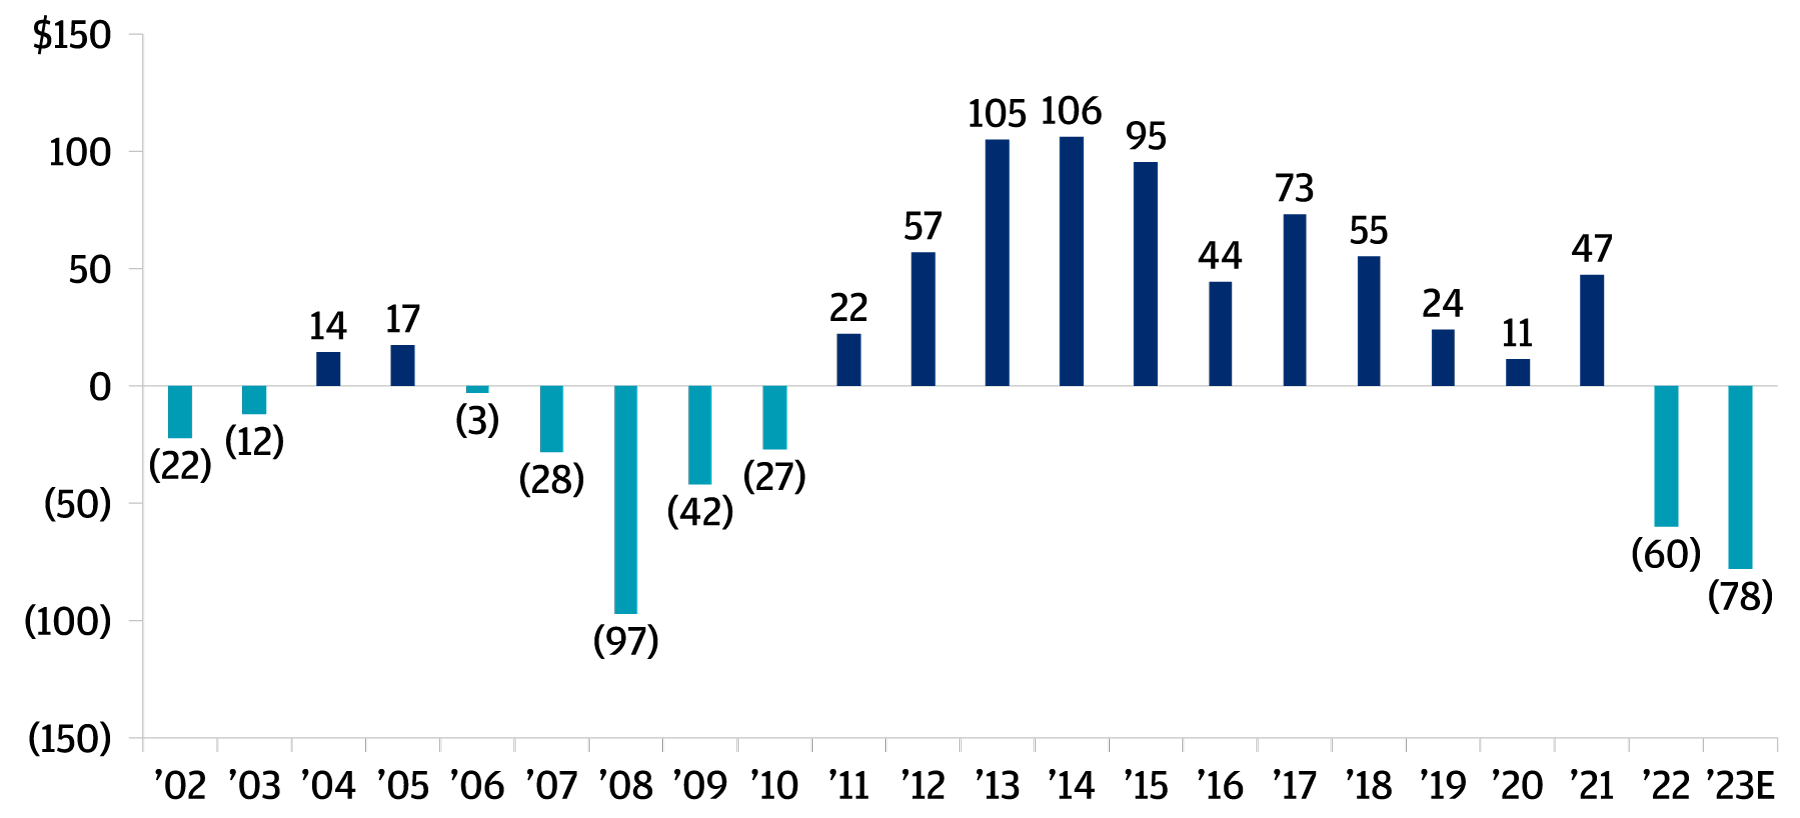 Das Balkendiagramm zeigt den Netto-Cashflow der Limited Partner im Verlauf der Jahre 2022 und 2023. Es wird deutlich, dass die Mittelflüsse der Limited Partner erstmals seit der globalen Finanzkrise von 2006 bis 2010 sowohl 2022 als auch 2023 wieder negativ waren.